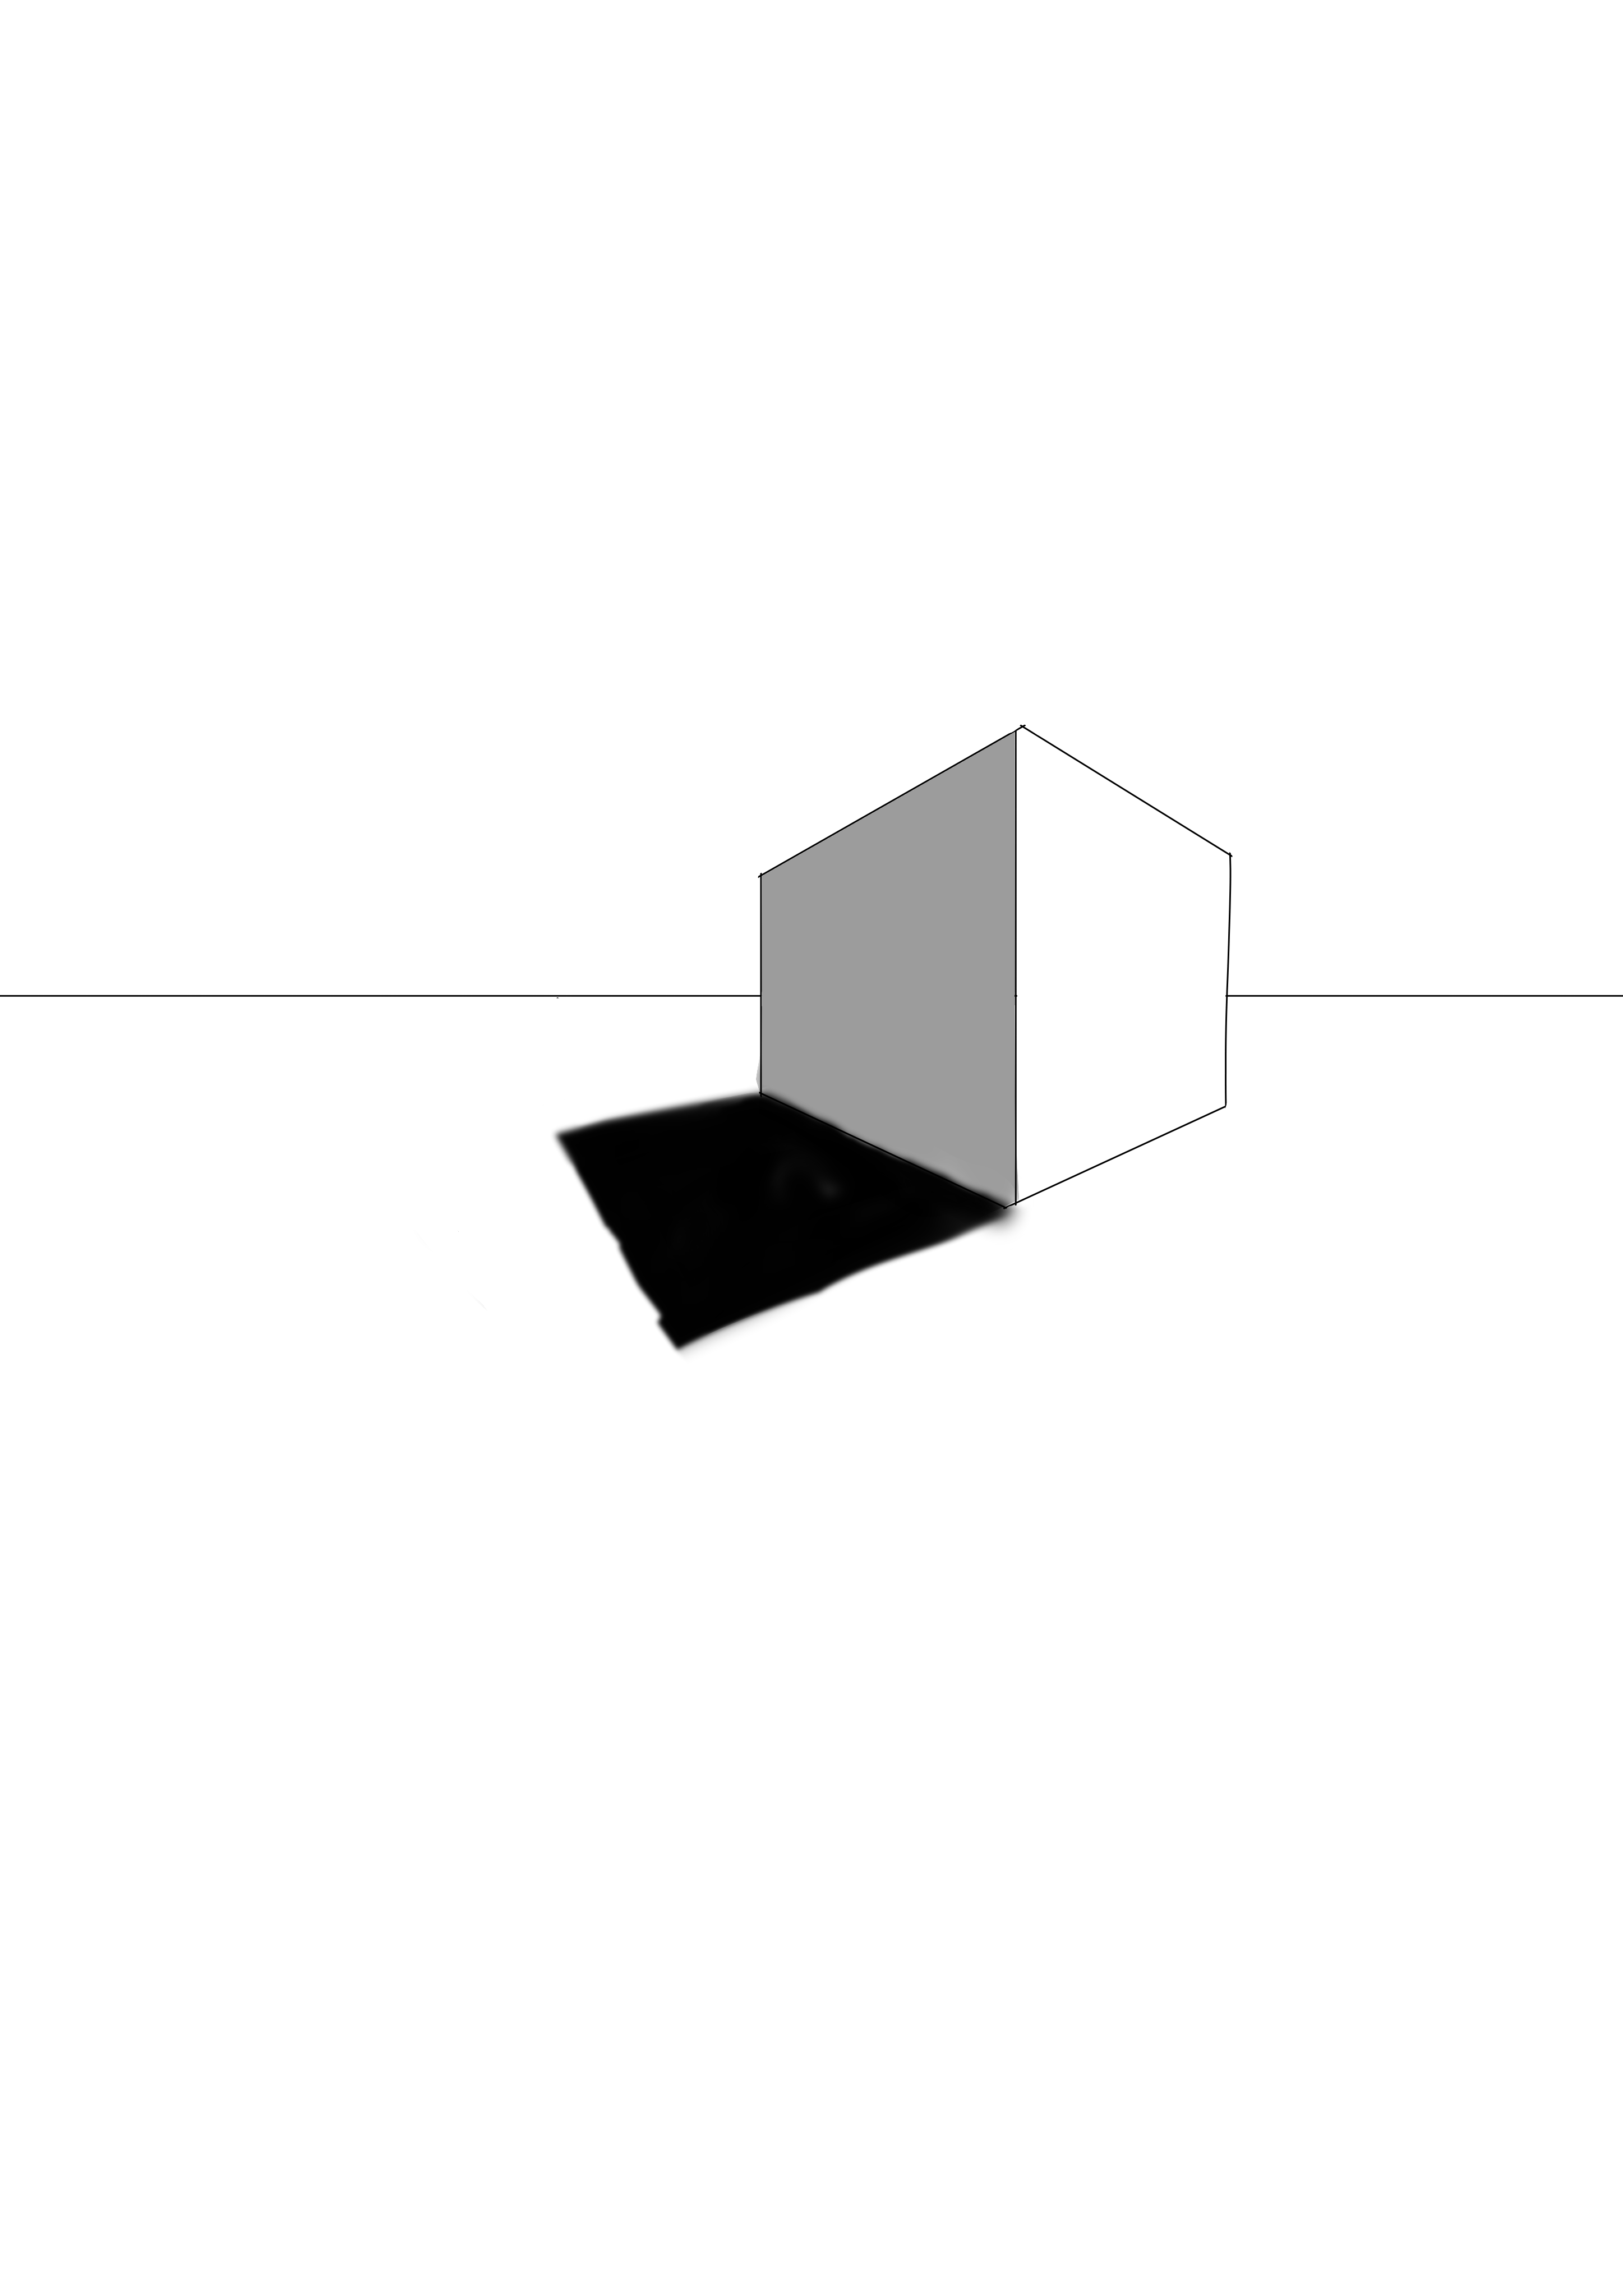 Um cubo em perspectiva com dois pontos de fuga e sombreamento